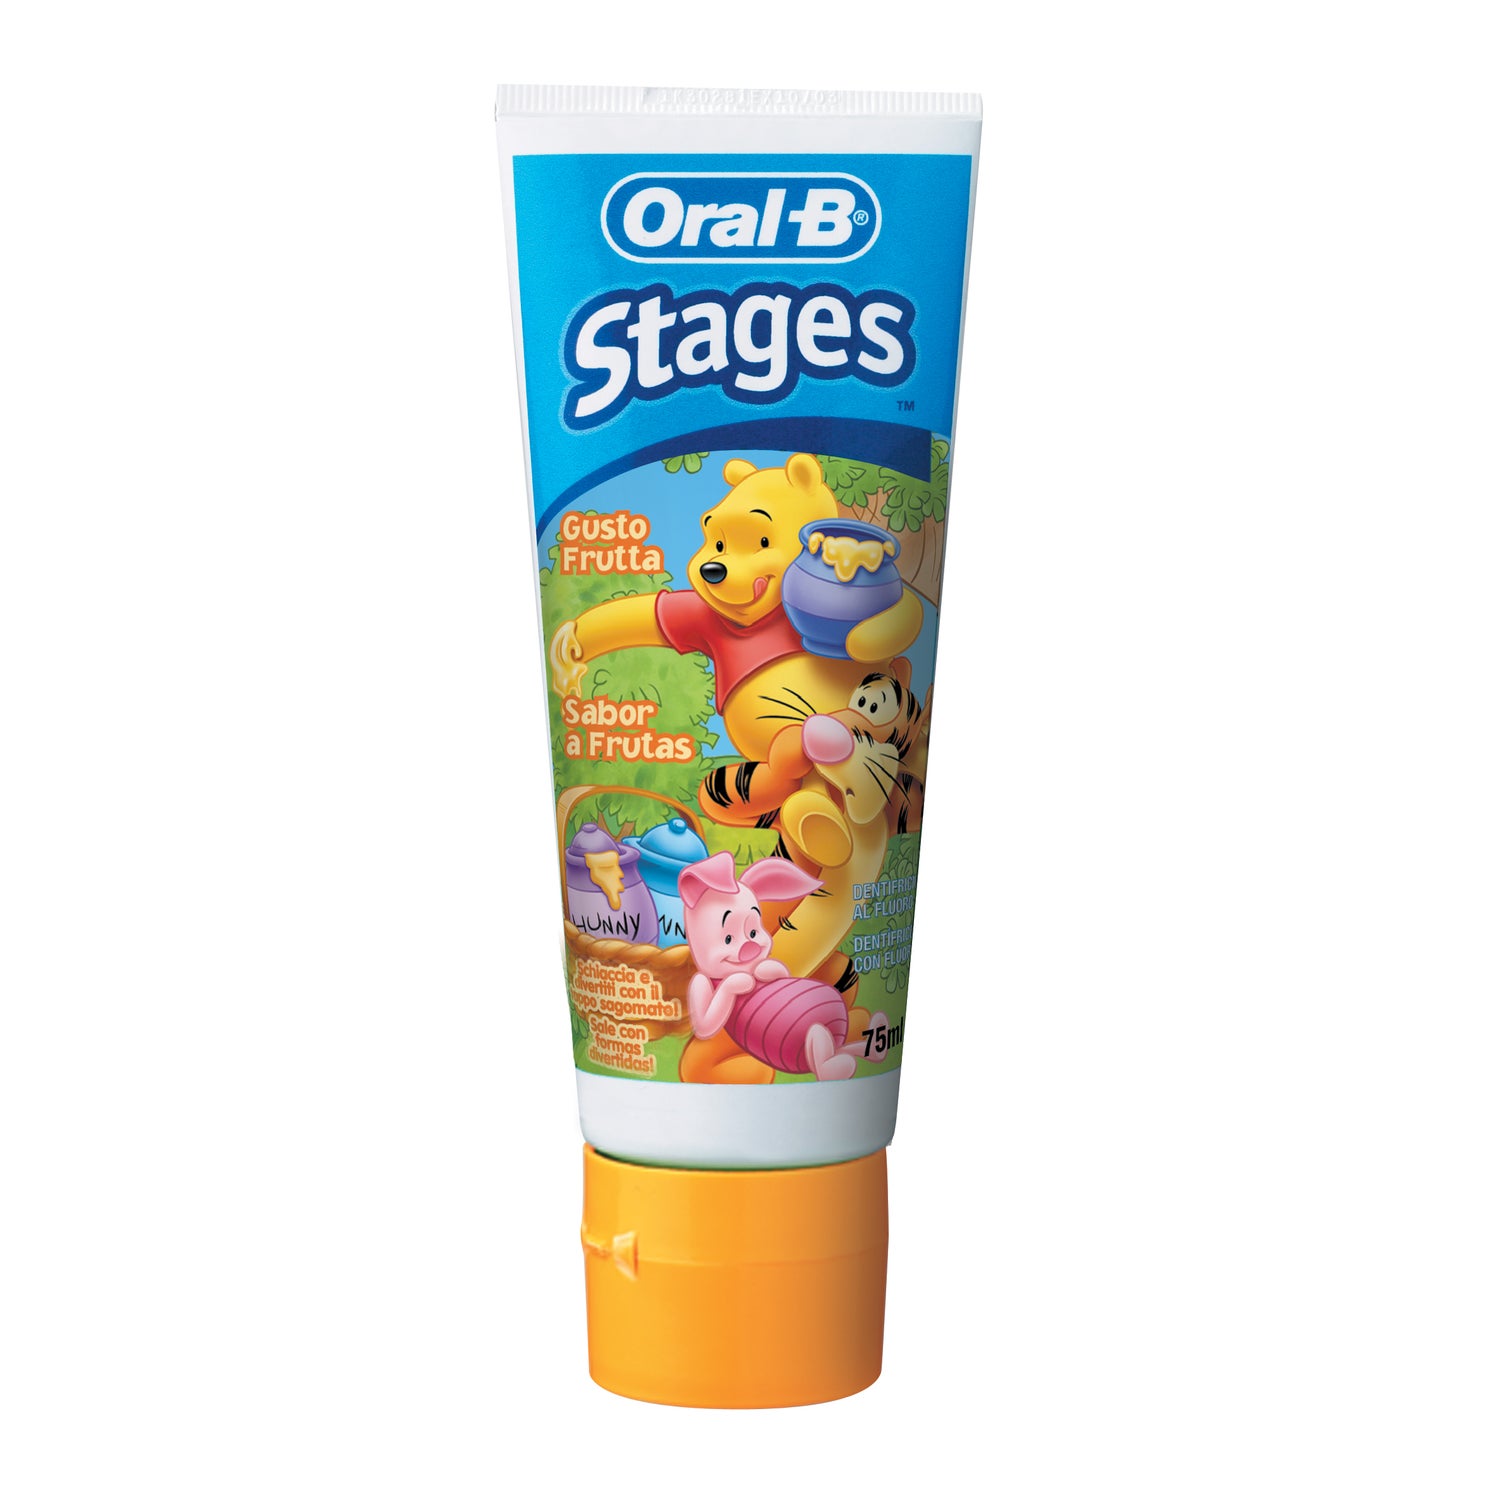 Cepillo Dental Para Bebé Oral-B Stages Disney Winnie Pooh 1 Unidad